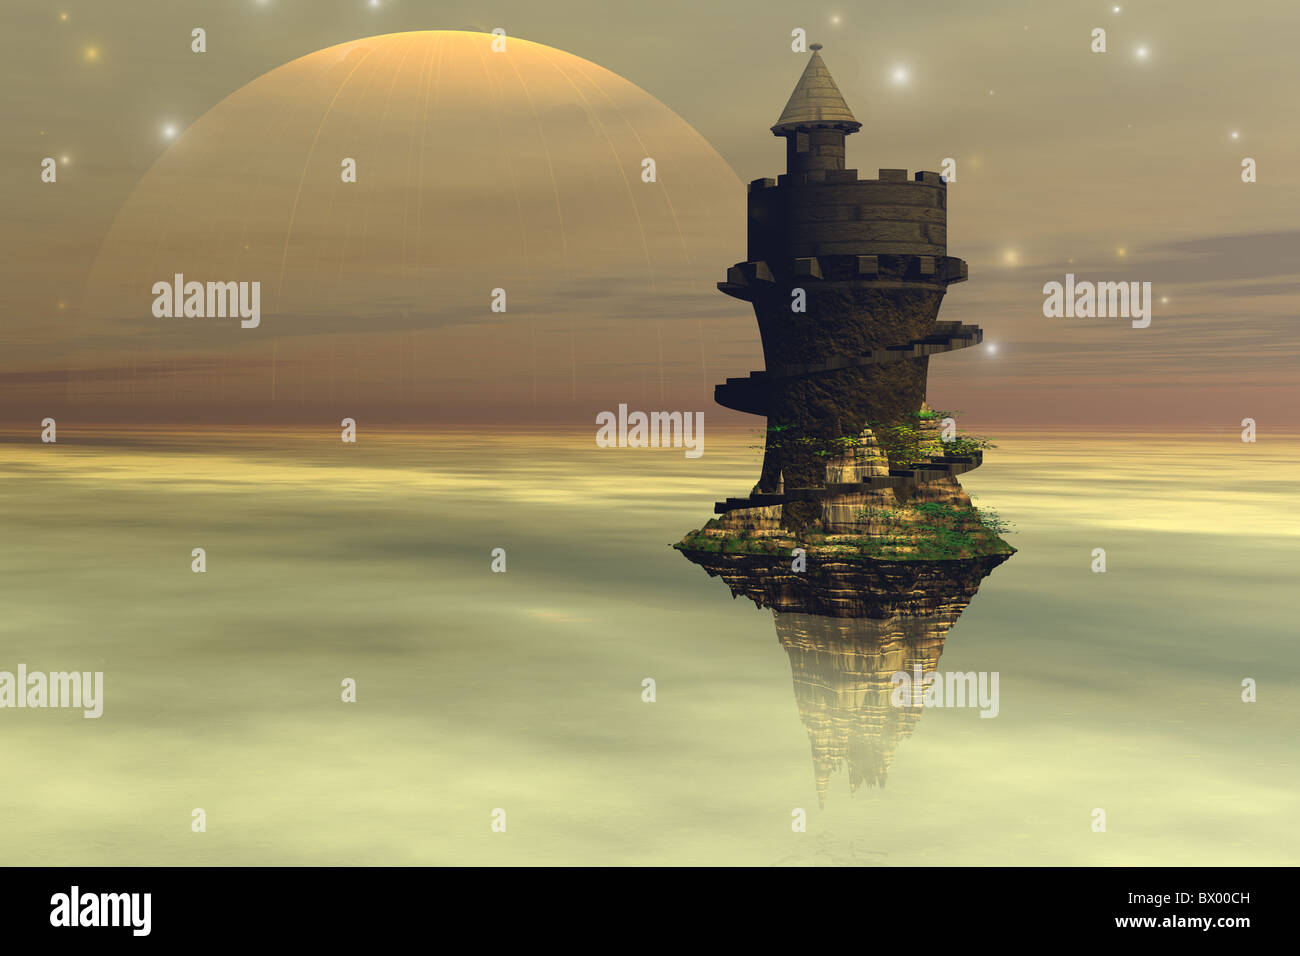 Ein Fantasy-Schloss schwebt in den Wolkenschichten des Planeten. Stockfoto